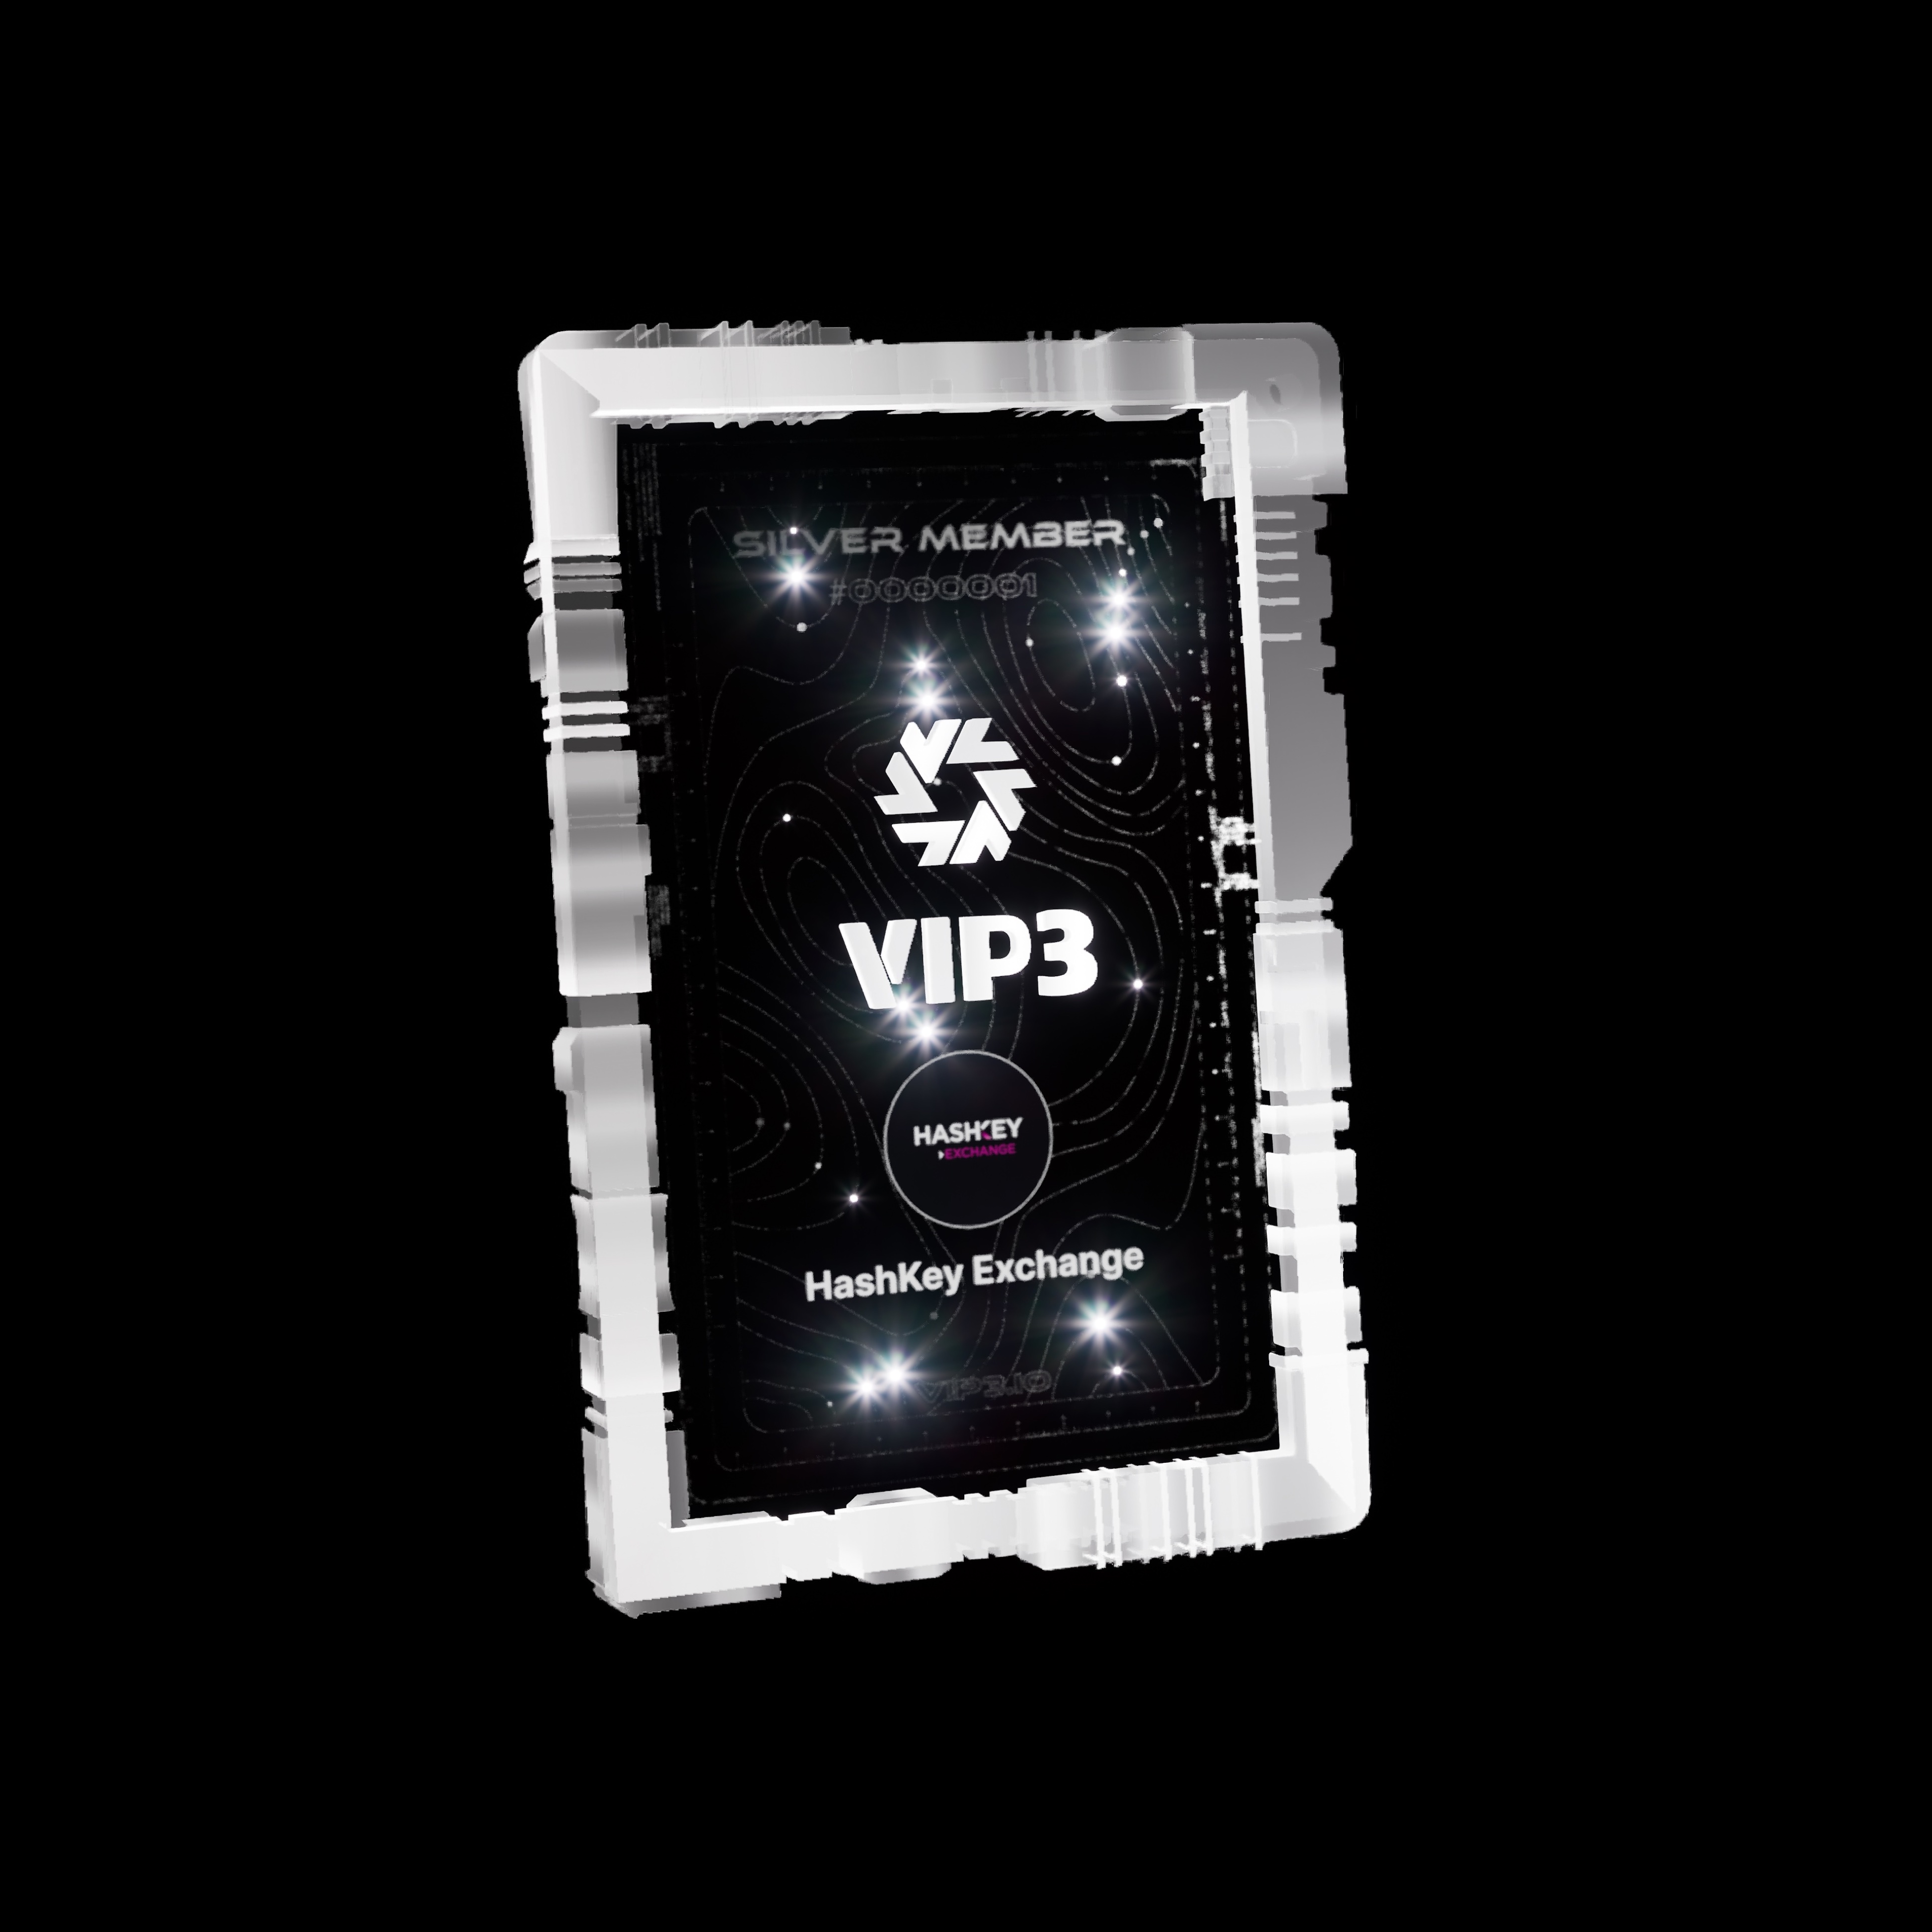 VIP3 SBT#6860